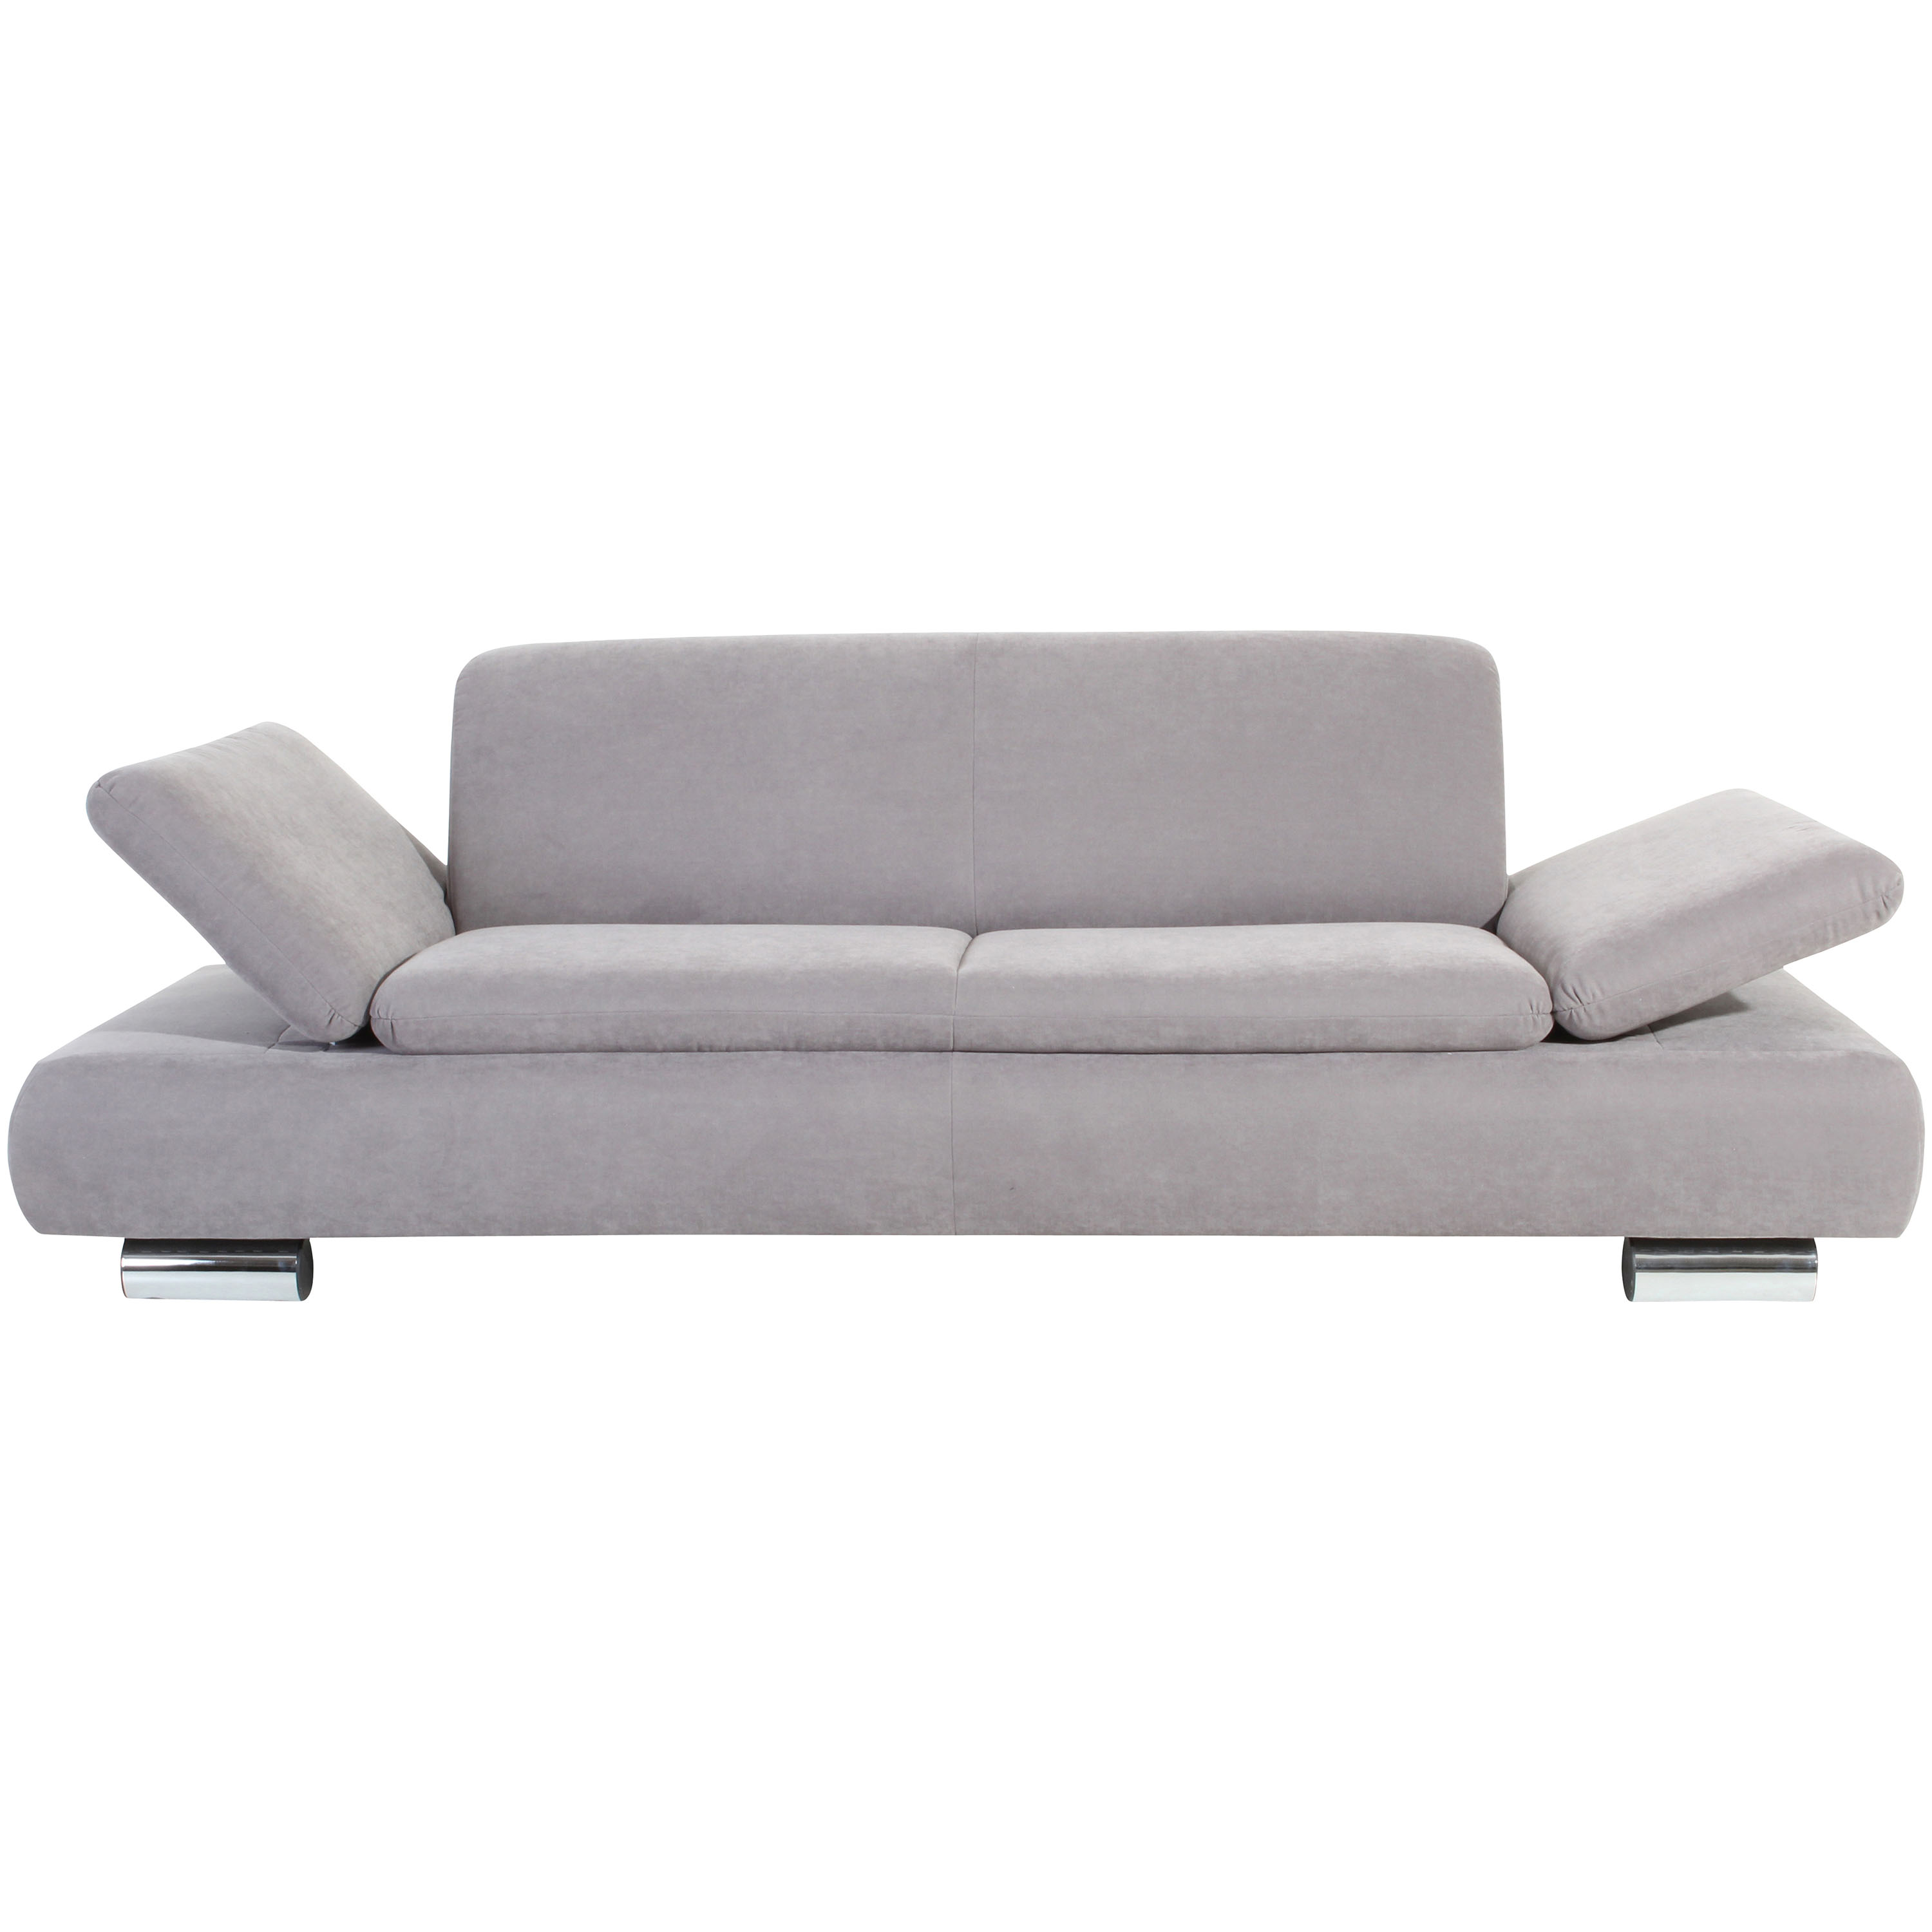 frontansicht von einem silbernen 2,5-sitzer sofa mit hochgeklappten armteilen und verchromten metallfüssen